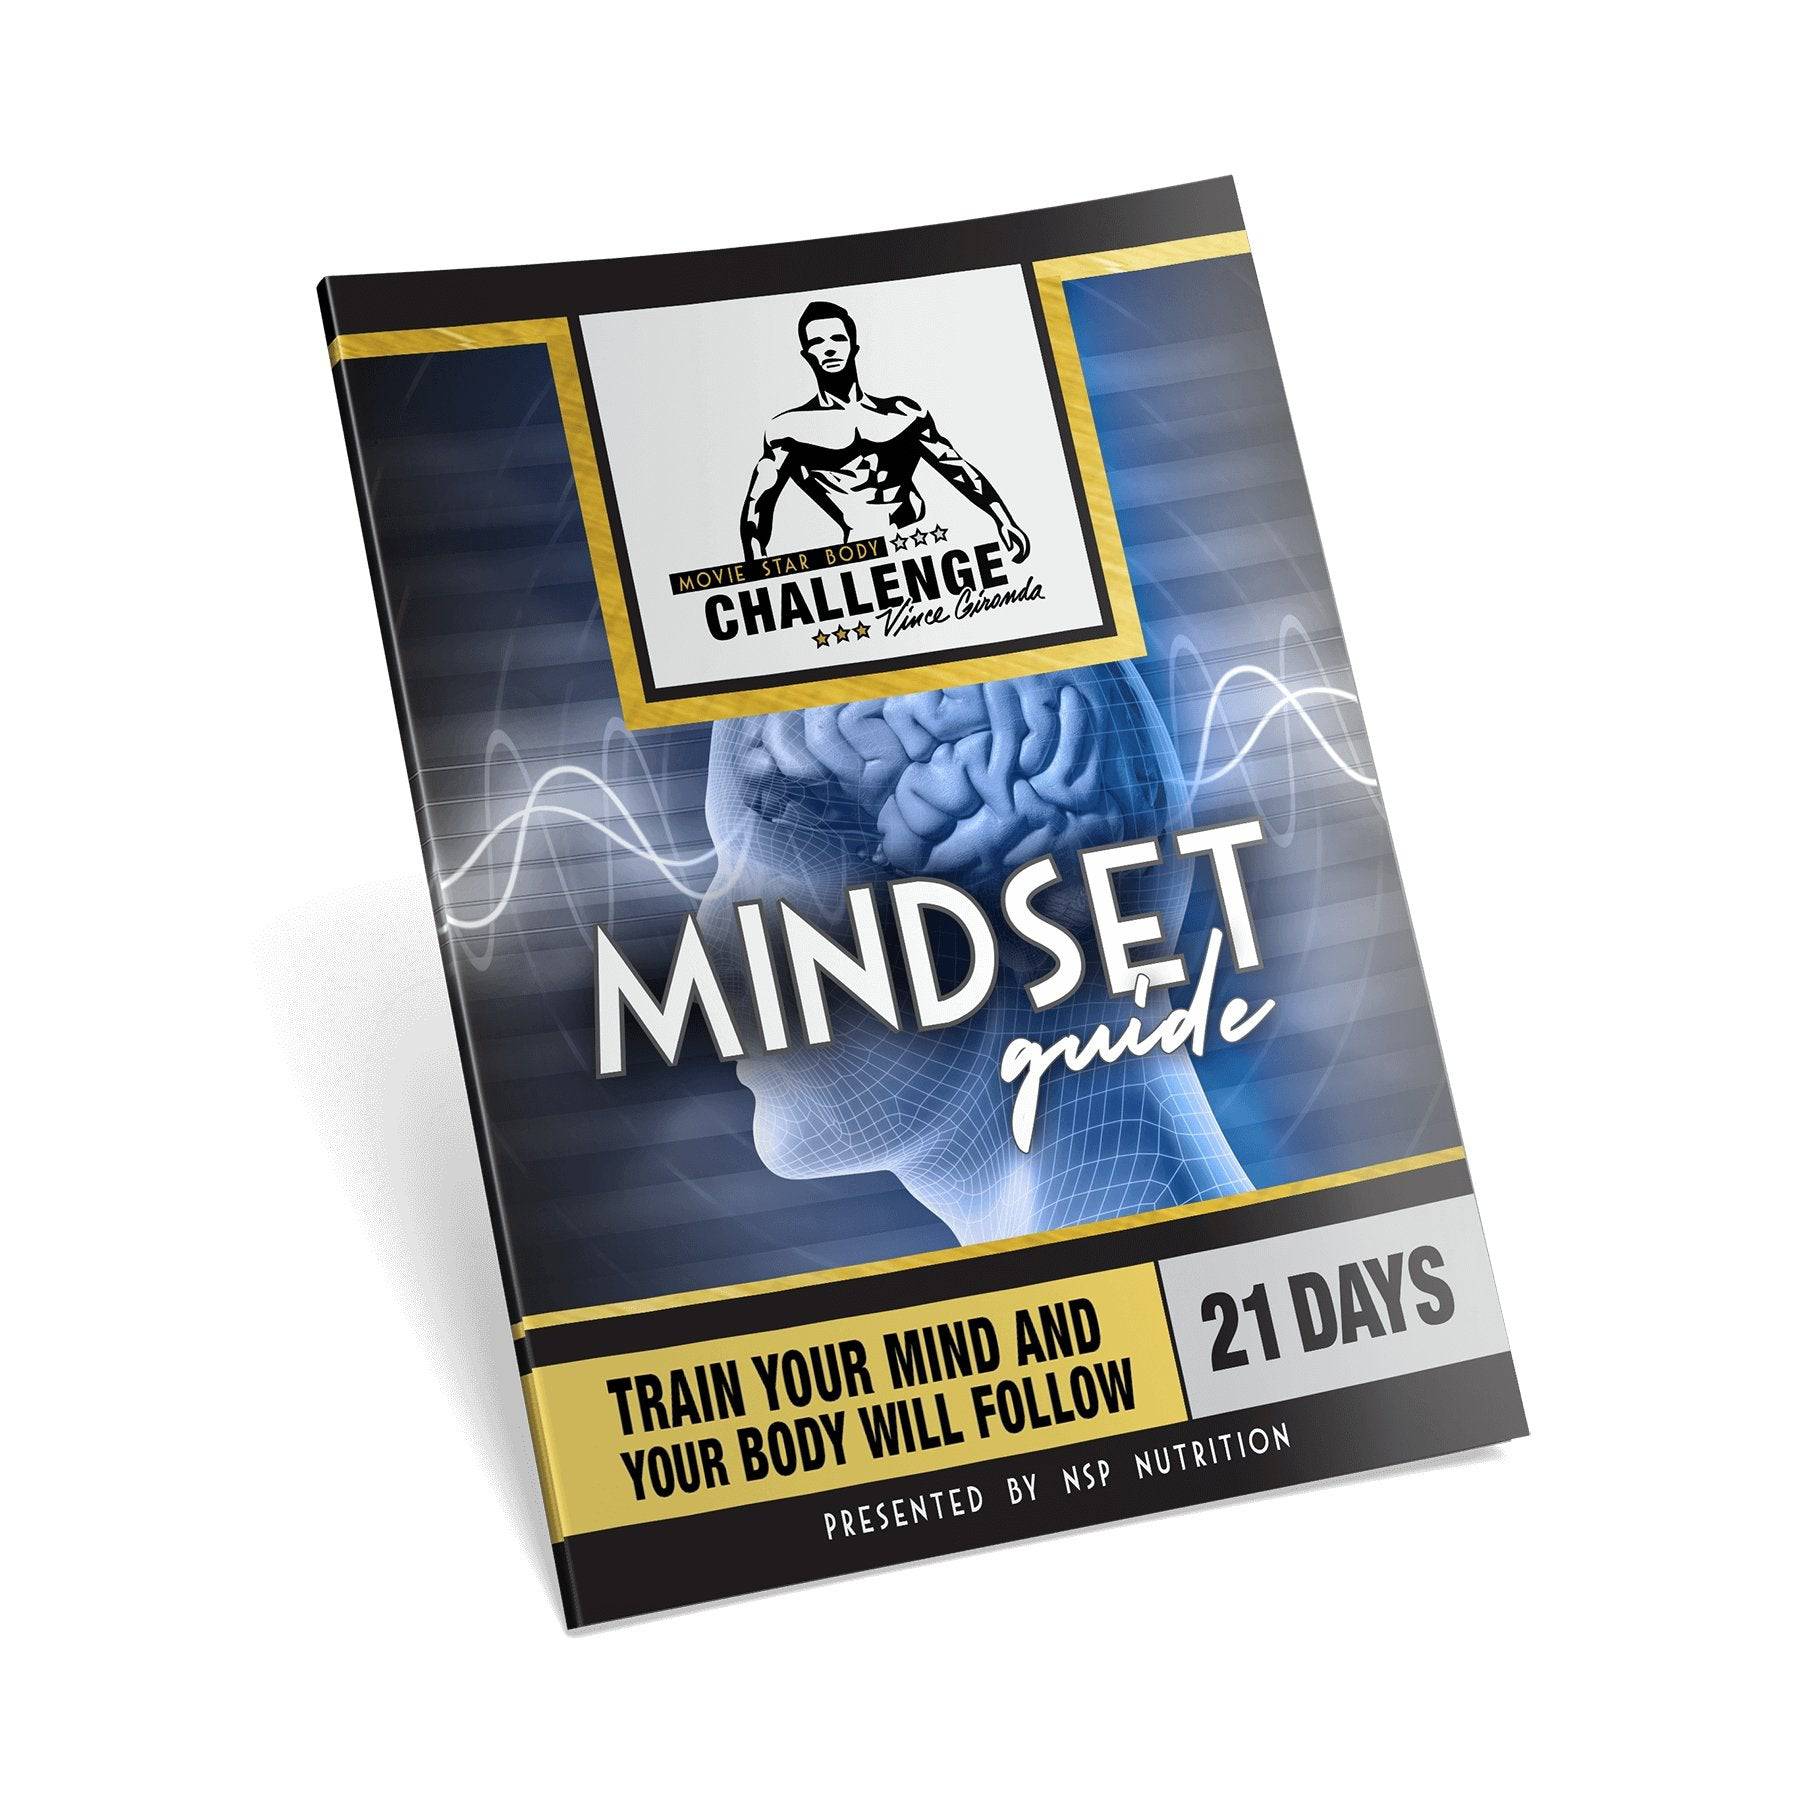 Mindset of a Superstar Bodybuilder by Vince Gironda (Digital) Book | NSP Nutrition